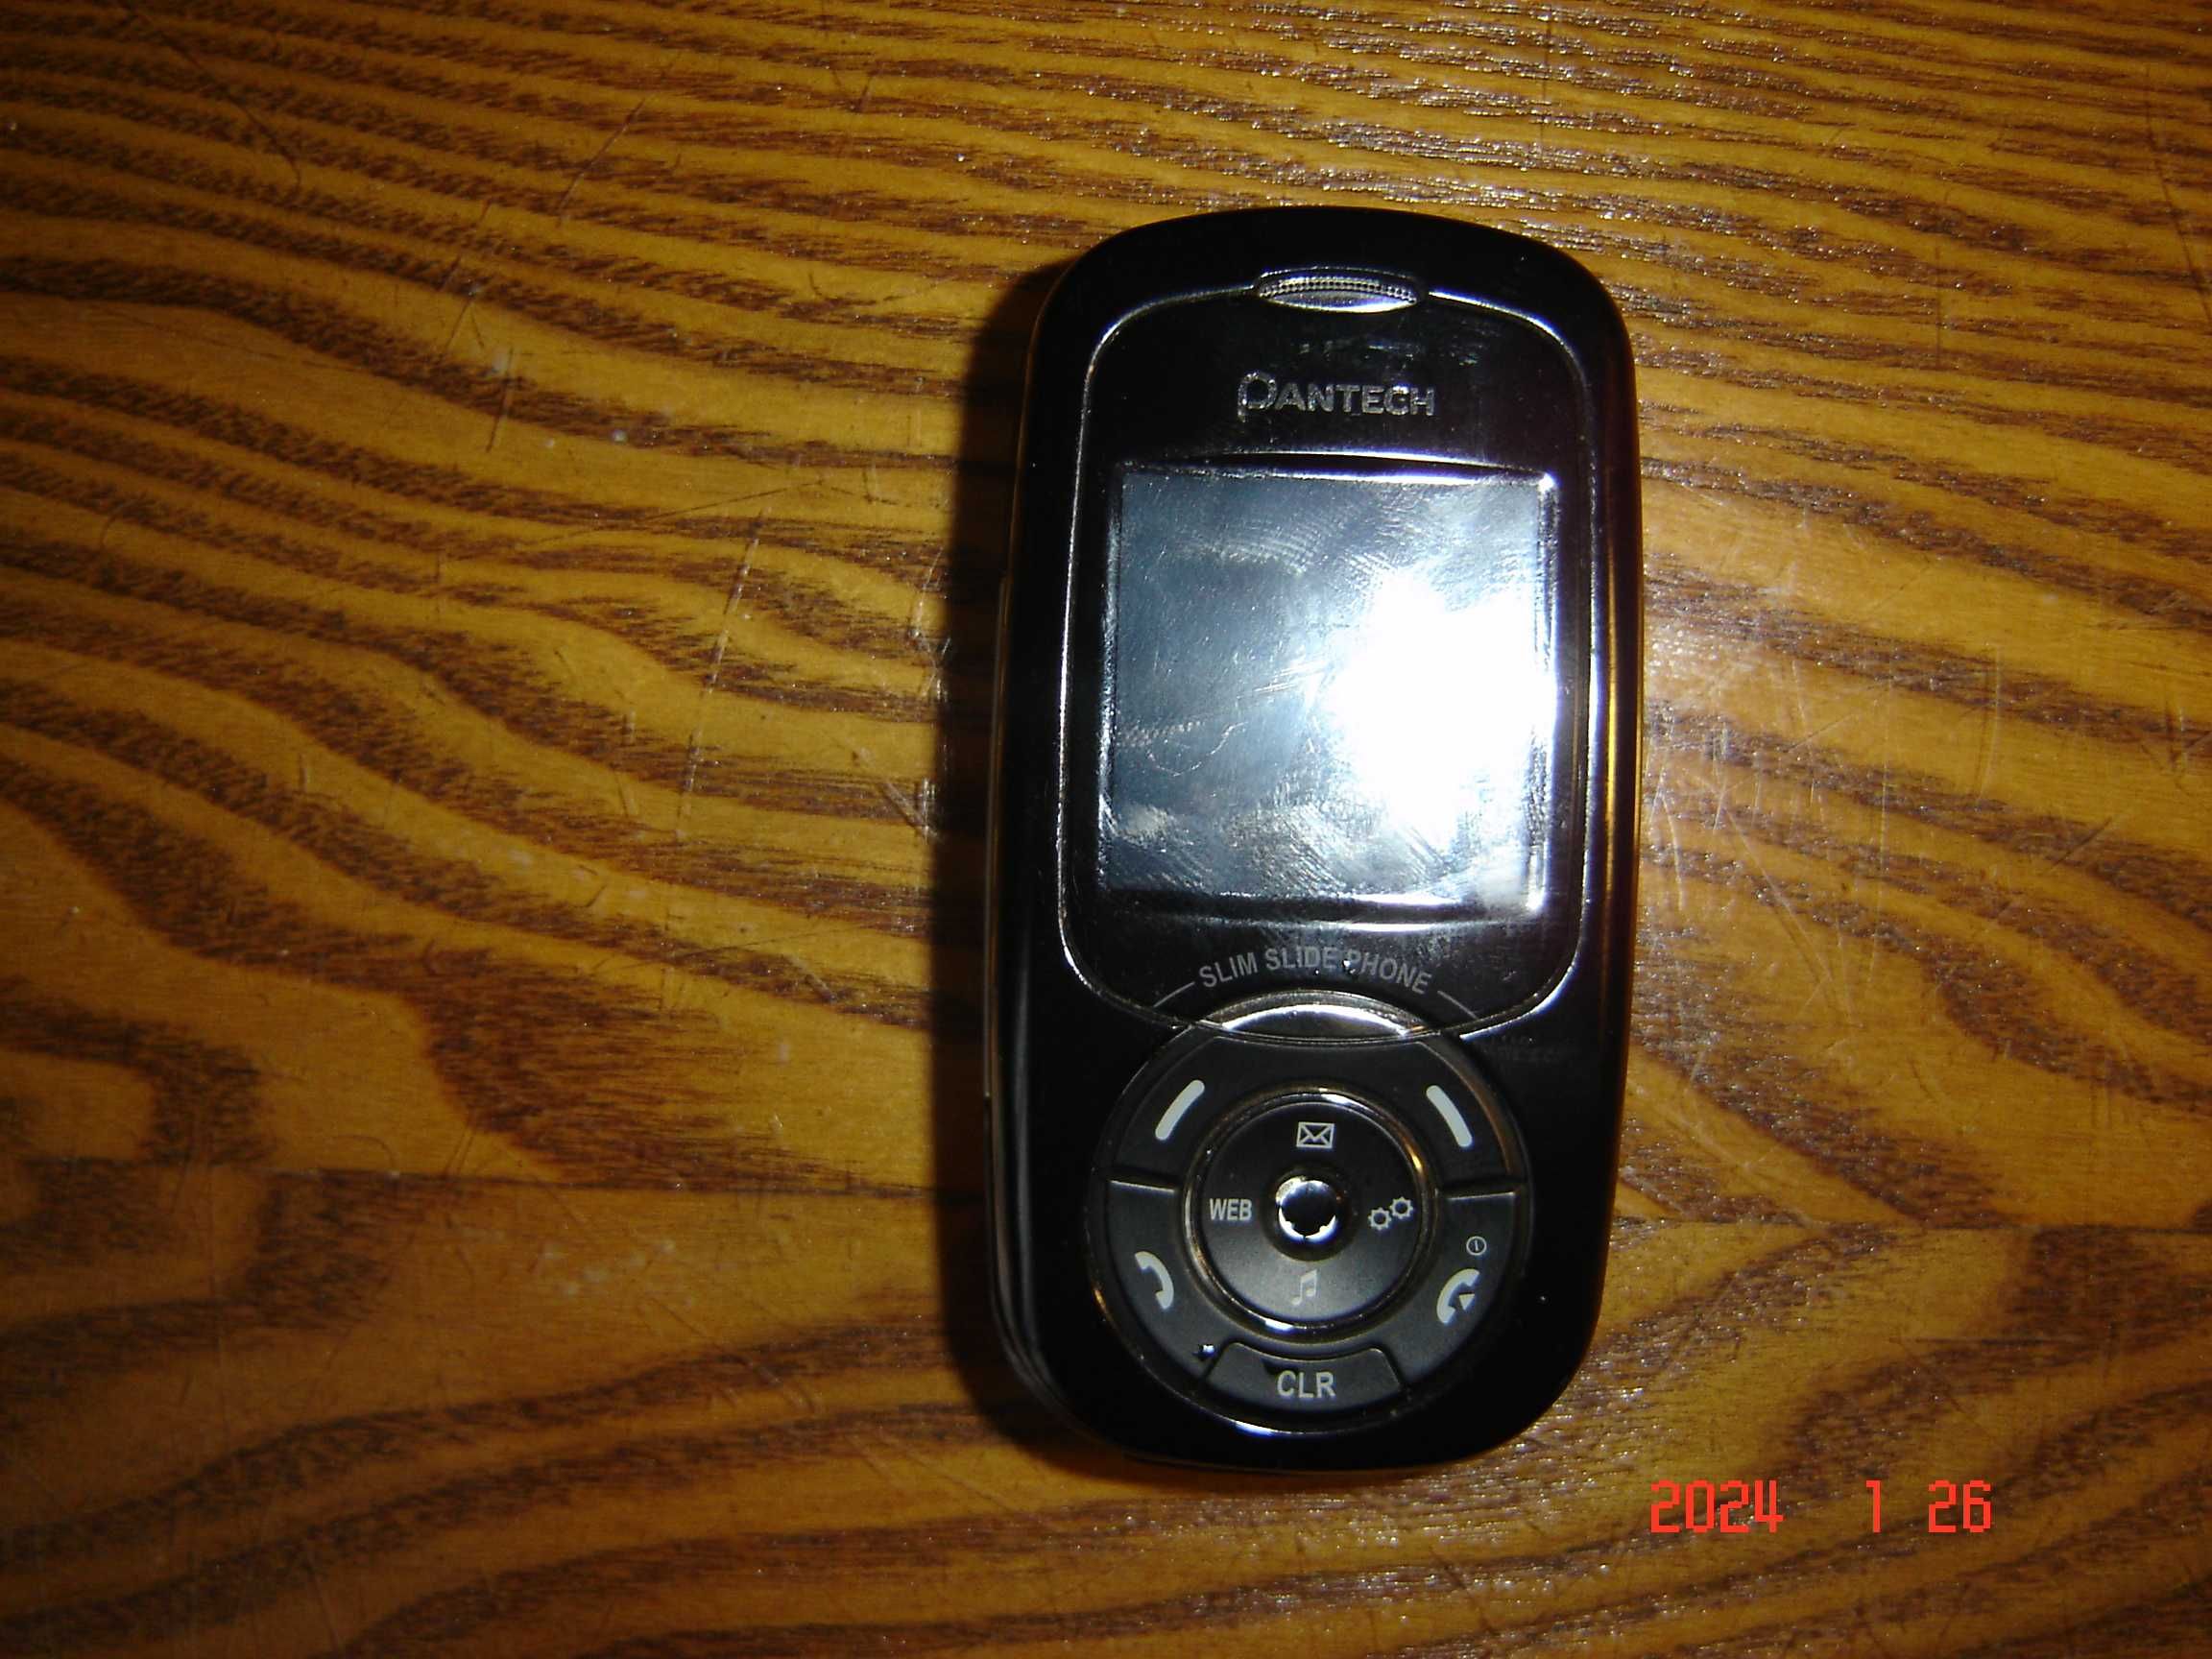 Мобильный телефон Pantech pc-7300l